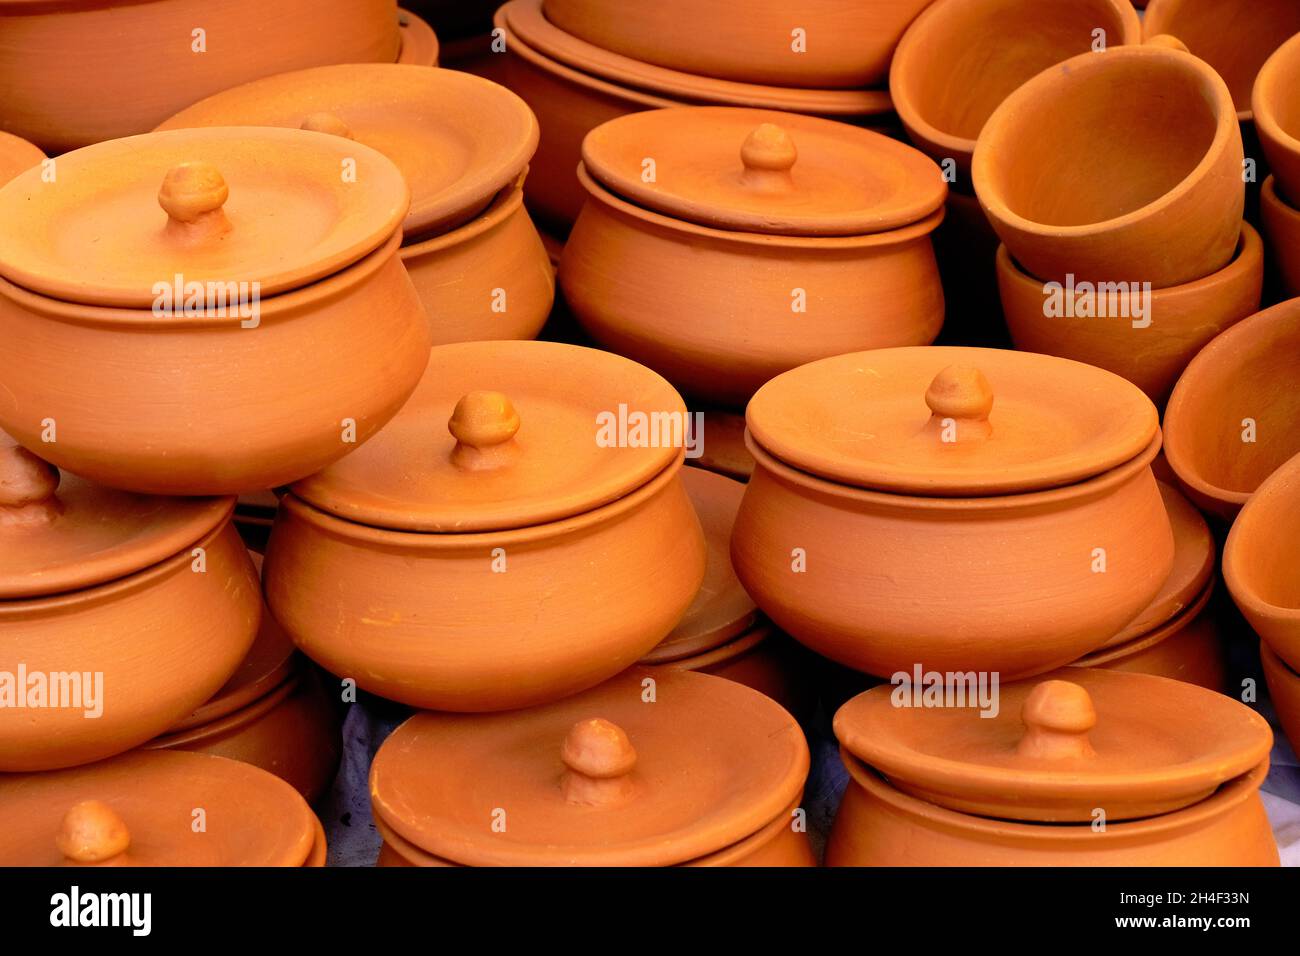 Los souvenirs de la cocina de terracota, olla y taza se acumulan en la  tienda de alfarería artesanal de la calle. Productos de terracota hechos a  mano en el mercado de artesanía